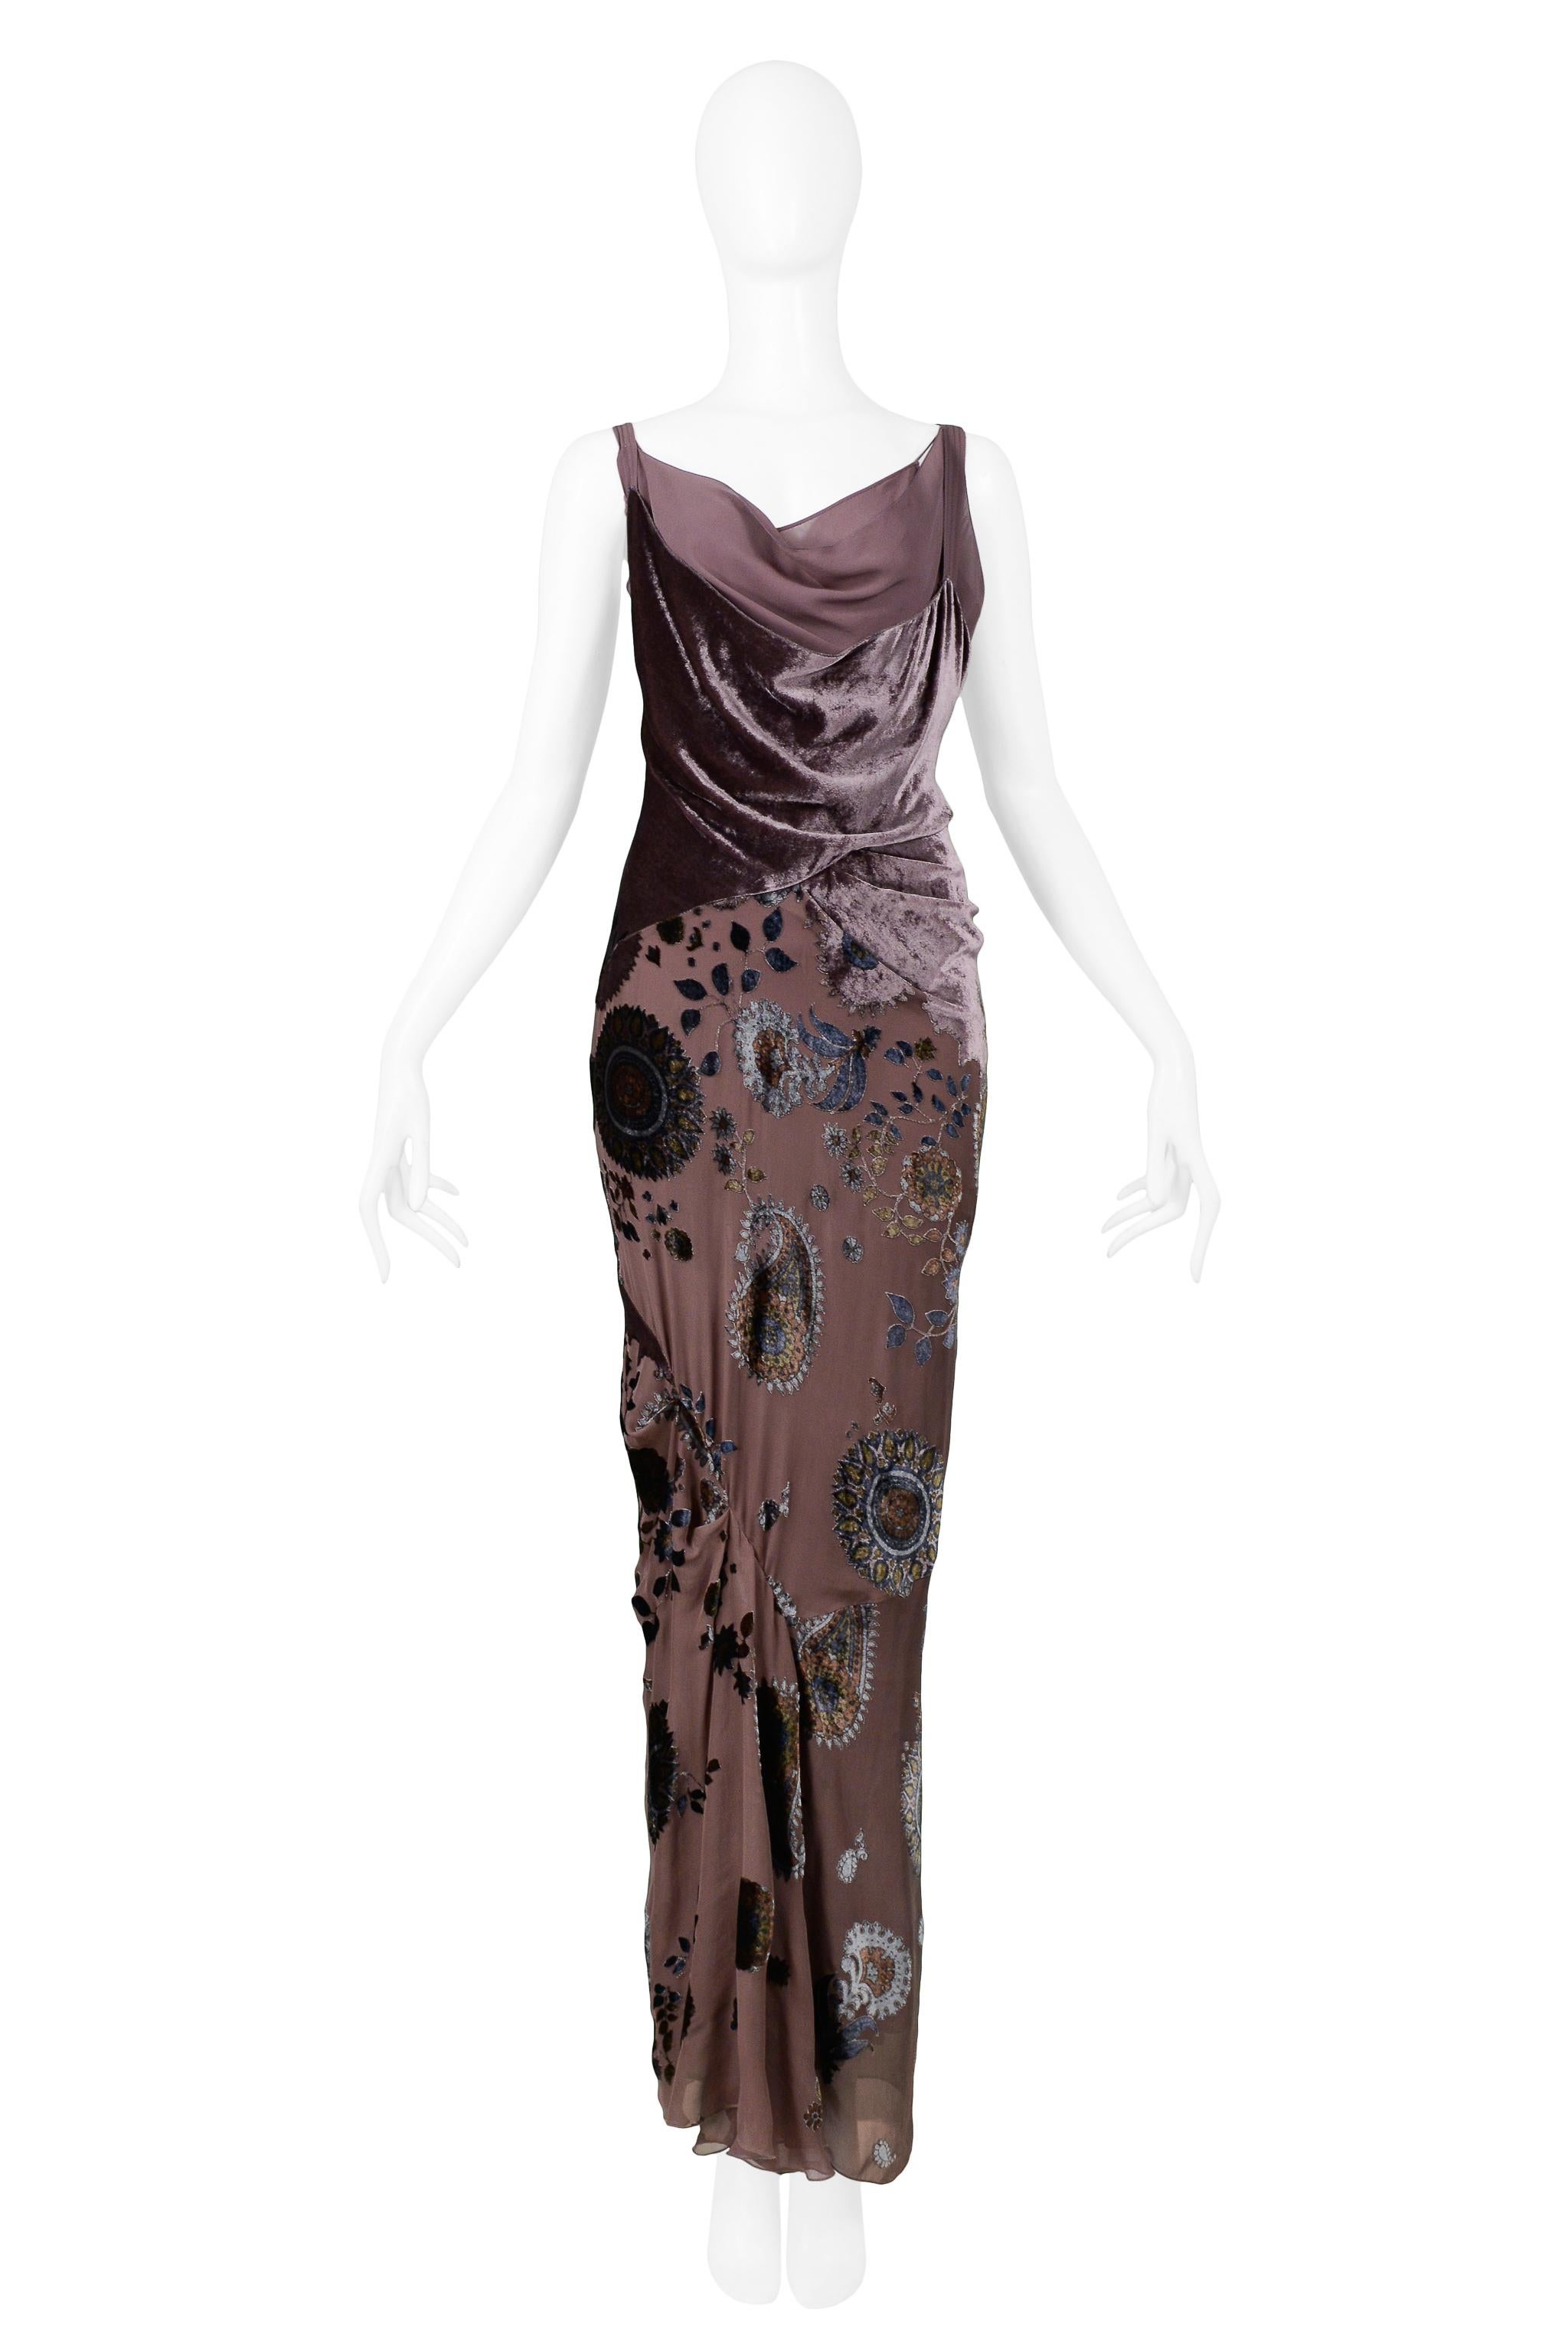 Resurrection a le plaisir de vous proposer cette robe vintage Christian Dior by John Galliano en velours taupe présentant un corsage asymétrique en velours et mousseline de soie, une jupe à fleurs multicolores burnoutées avec un panneau froncé, et